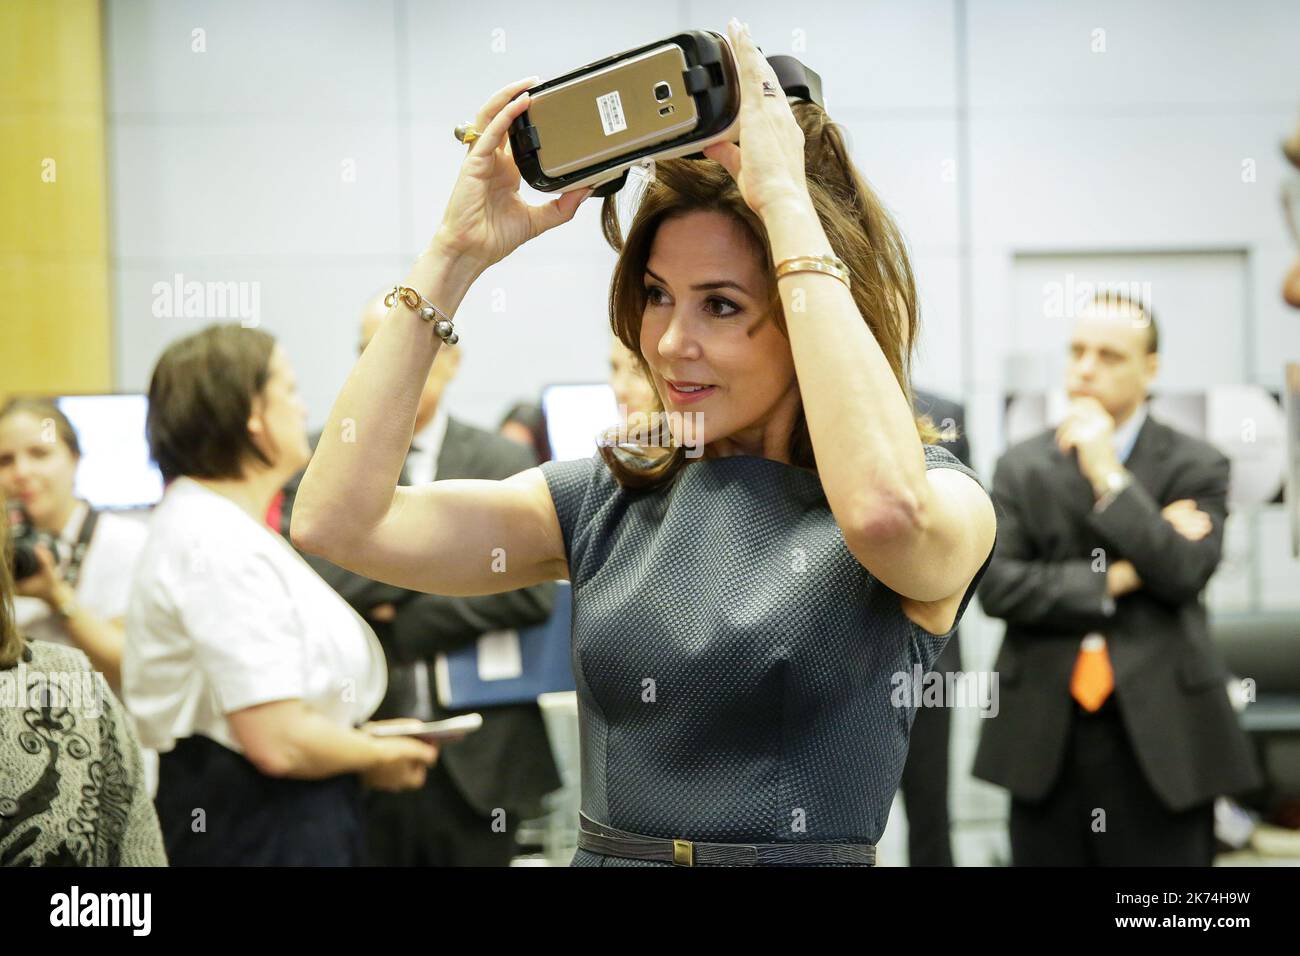 La principessa danese Mary visita la sala della realtà virtuale durante il Forum 2017 presso la sede dell'OCSE (Organizzazione per la cooperazione e lo sviluppo economico) a Parigi, Francia Foto Stock